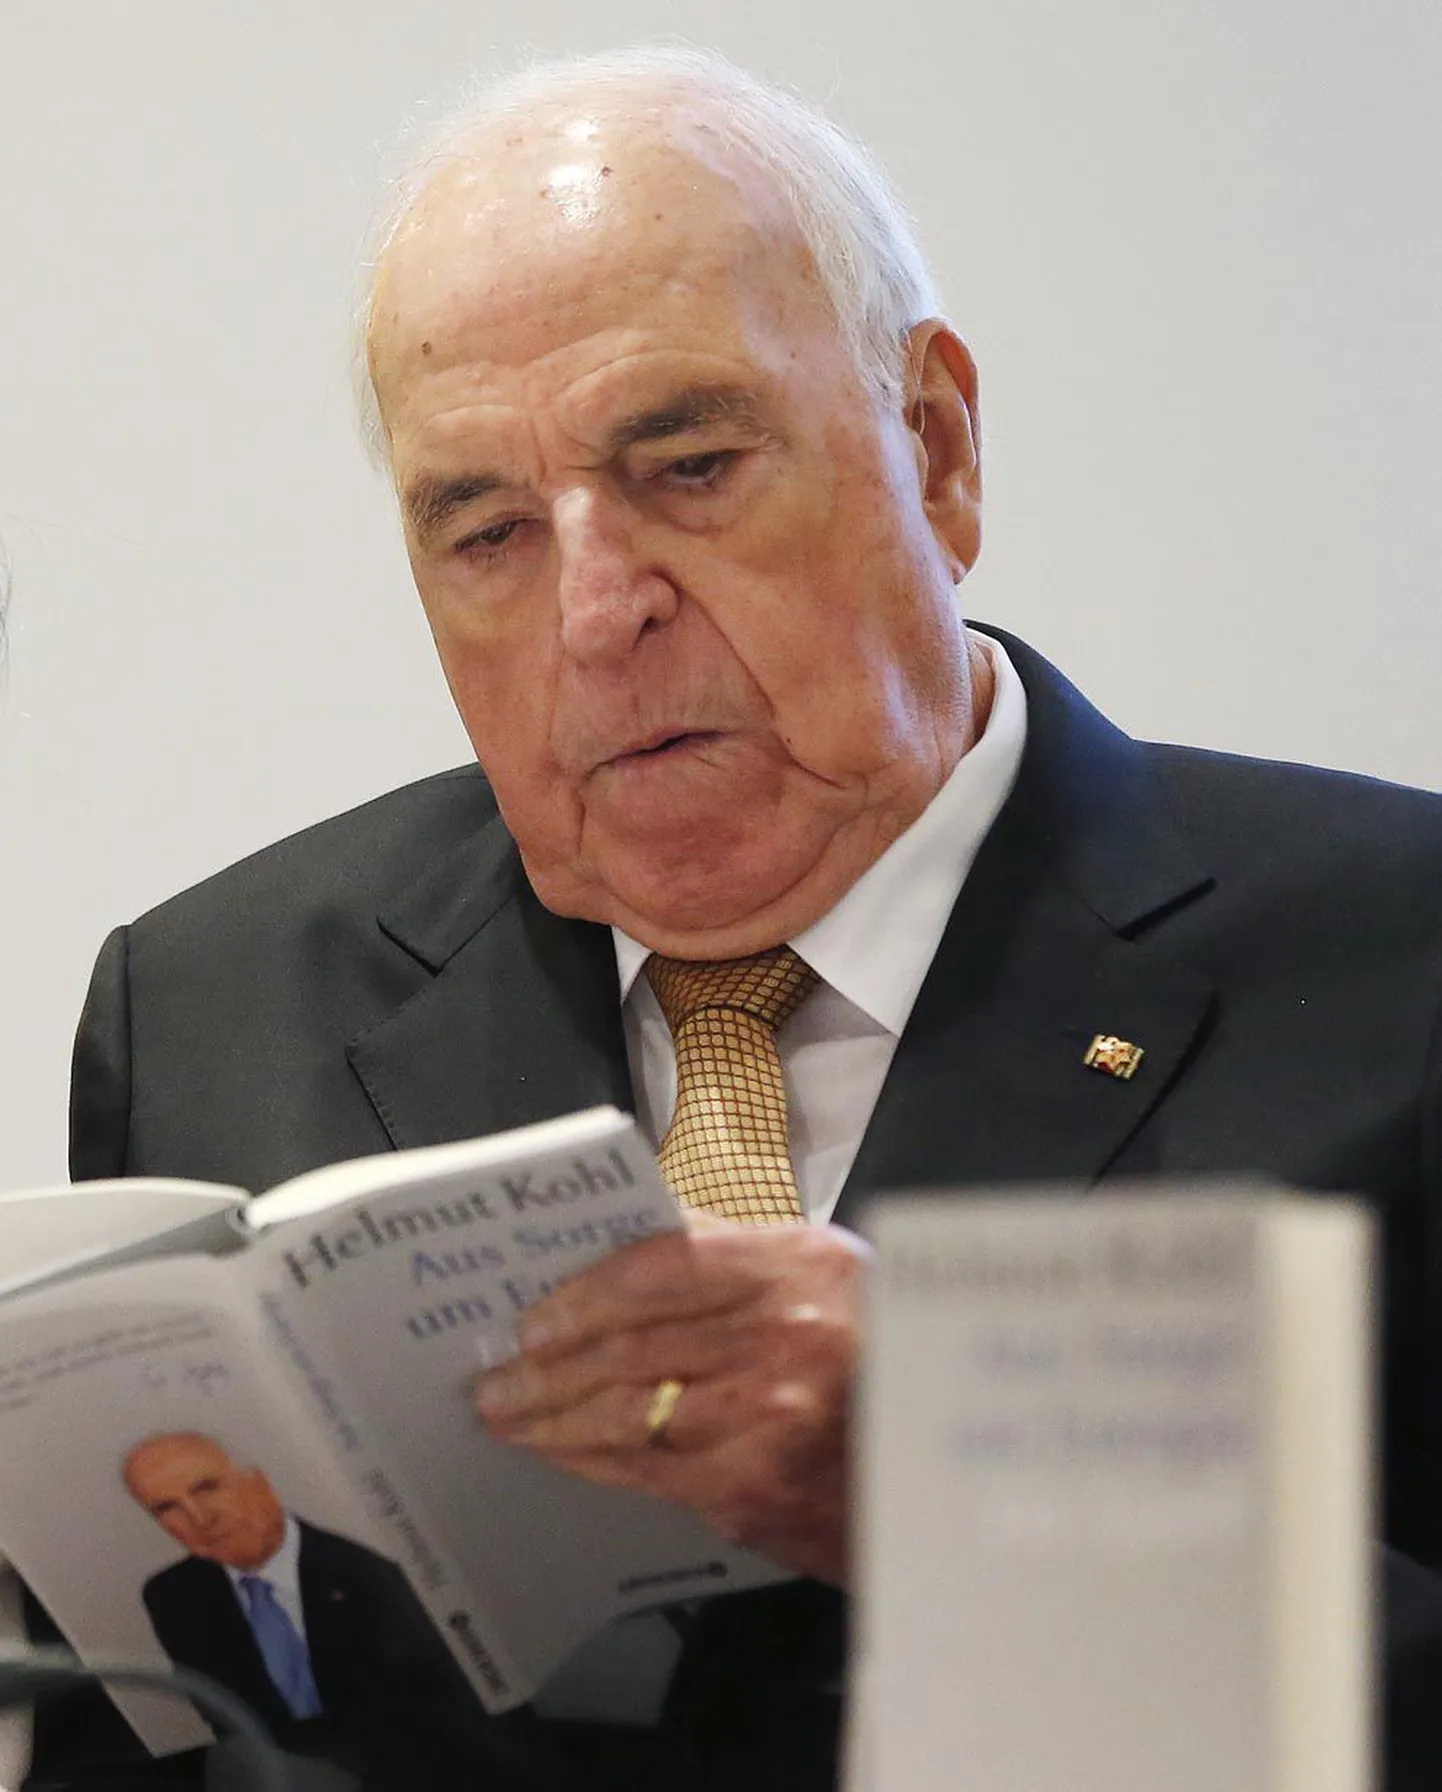 Helmut Kohl uuris eile Frankfurdis homme ilmuvat raamatut.